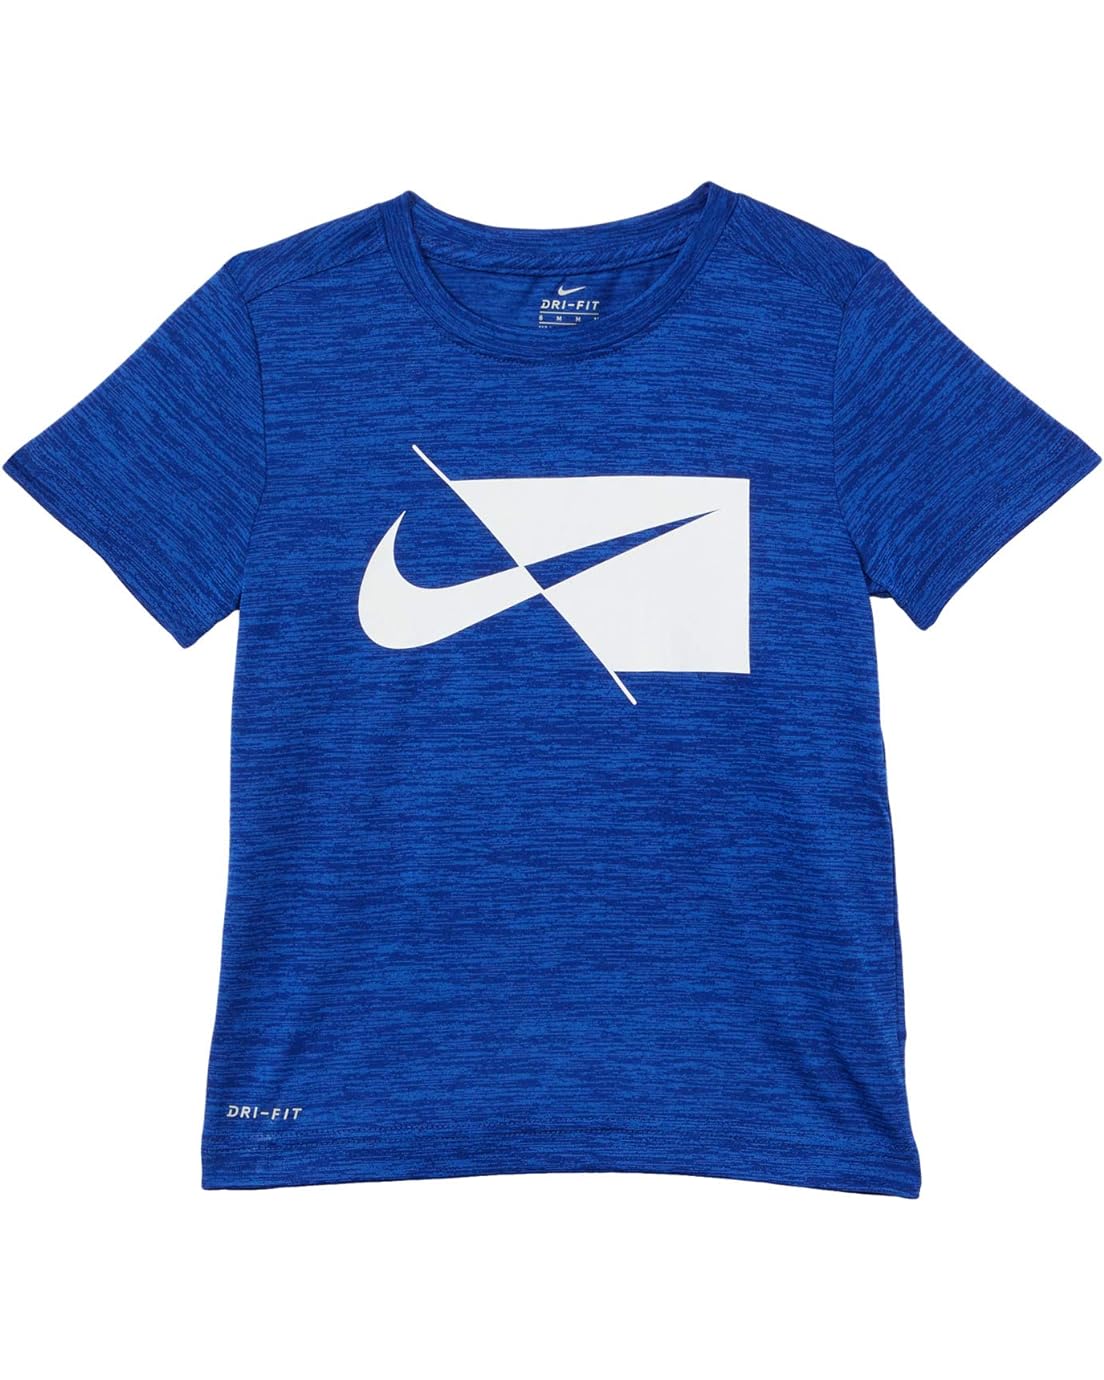 Nike Kids Dri-FIT T-Shirt (Toddler)